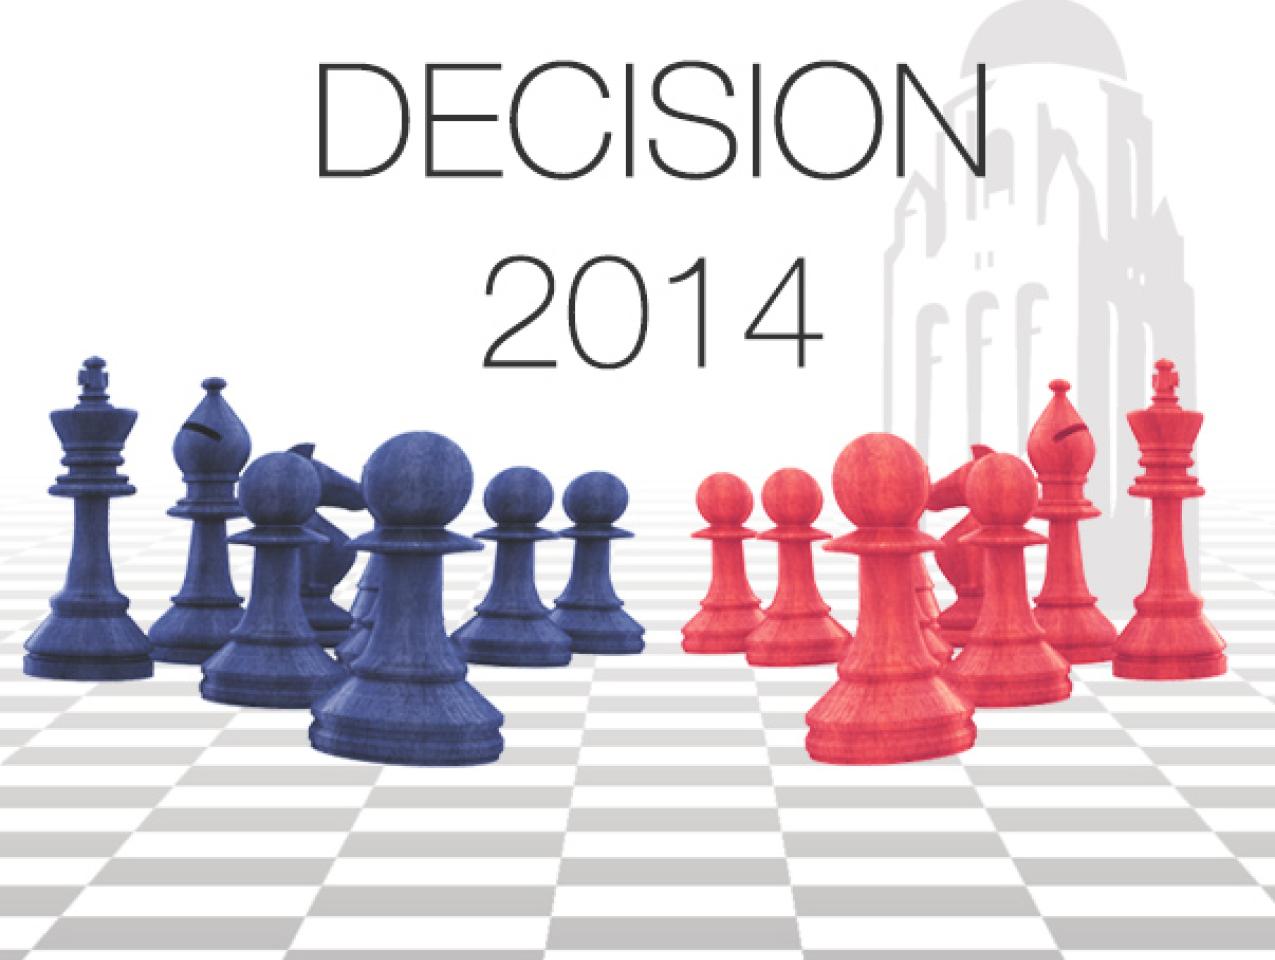 Decision 2014